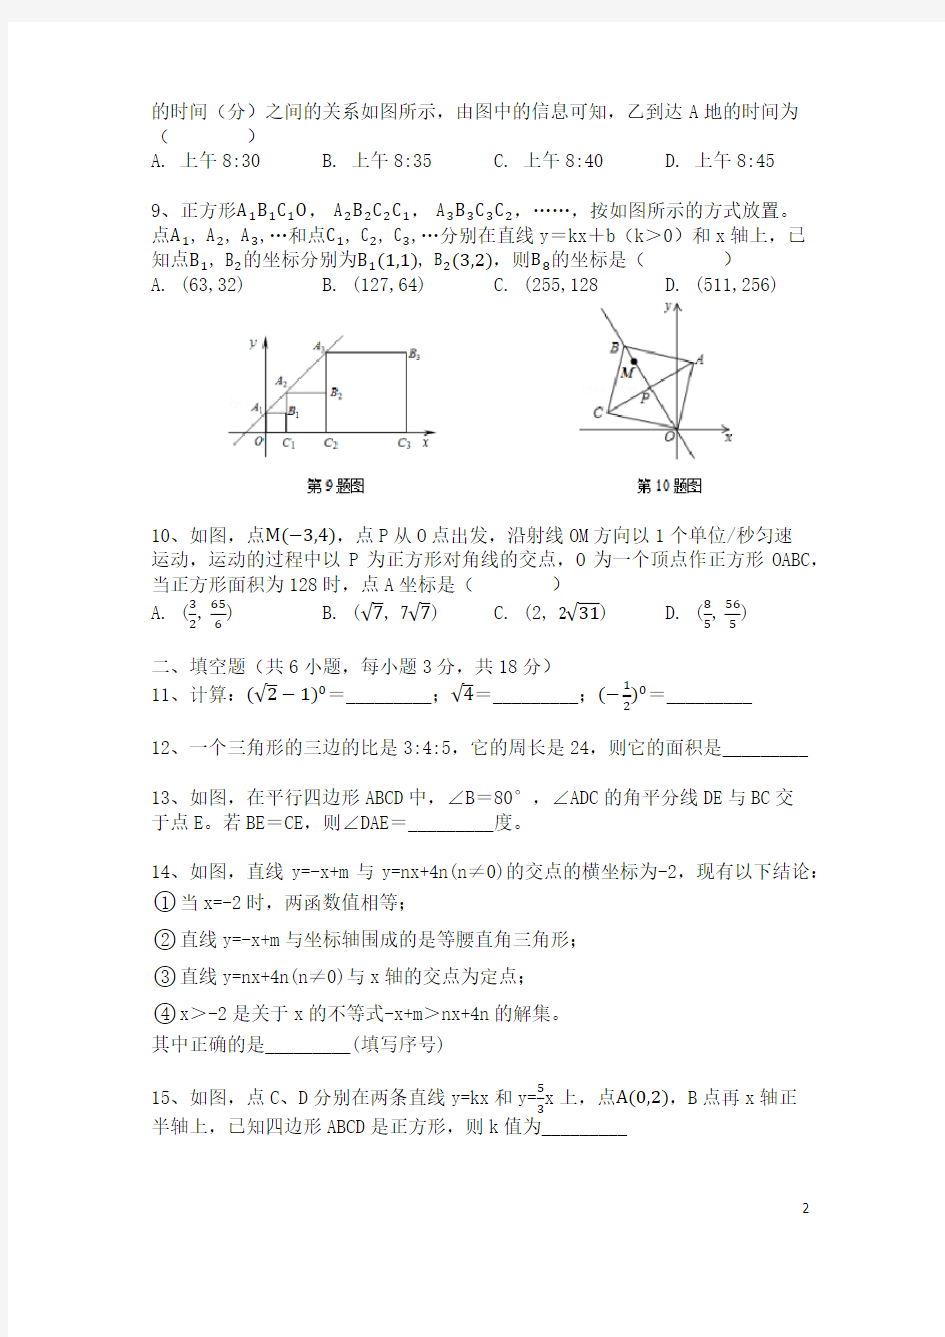 武汉市2016-2017学年八年级数学下学期期末试题(附答案)